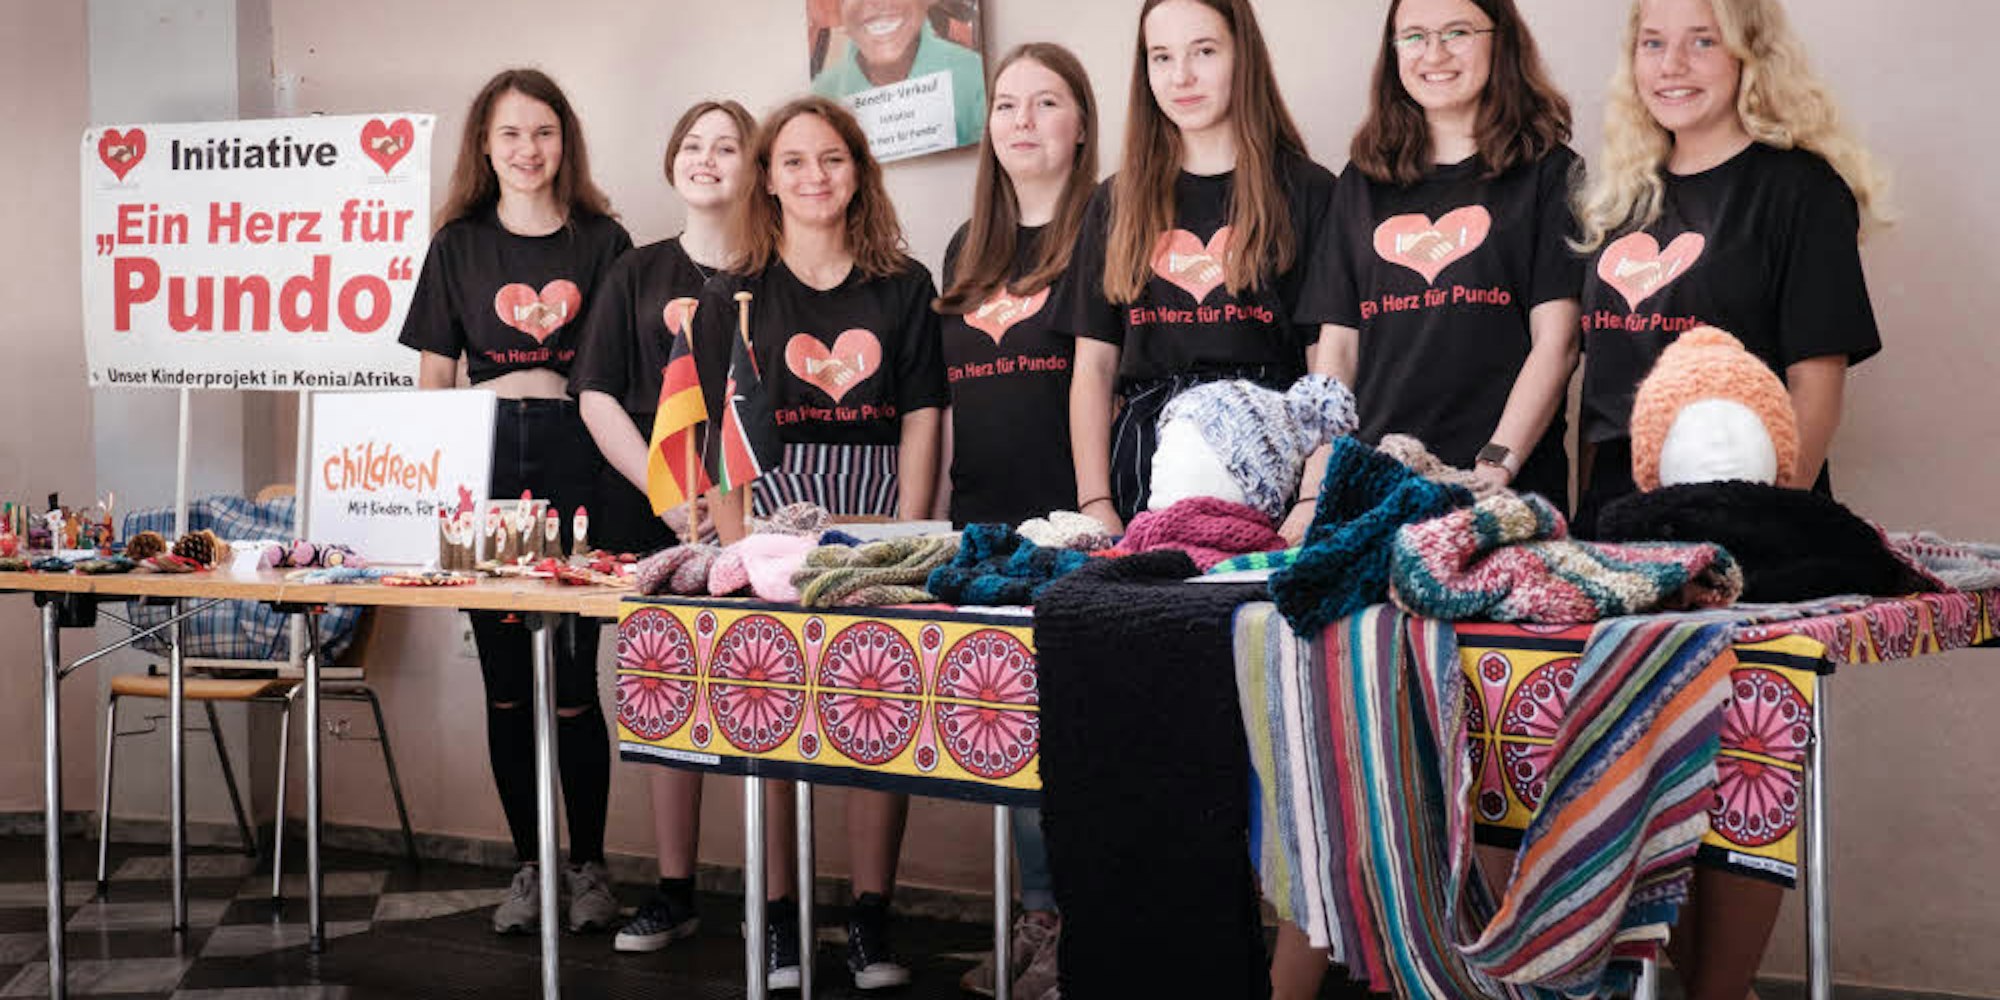 Glückwunsch! Die siebenköpfige Projektgruppe „Ein Herz für Pundo“ an der Ursulinenschule Hersel wurde in dem Wettbewerb „Jugend hilft“ der Initiative „CHILDREN“ ausgezeichnet.